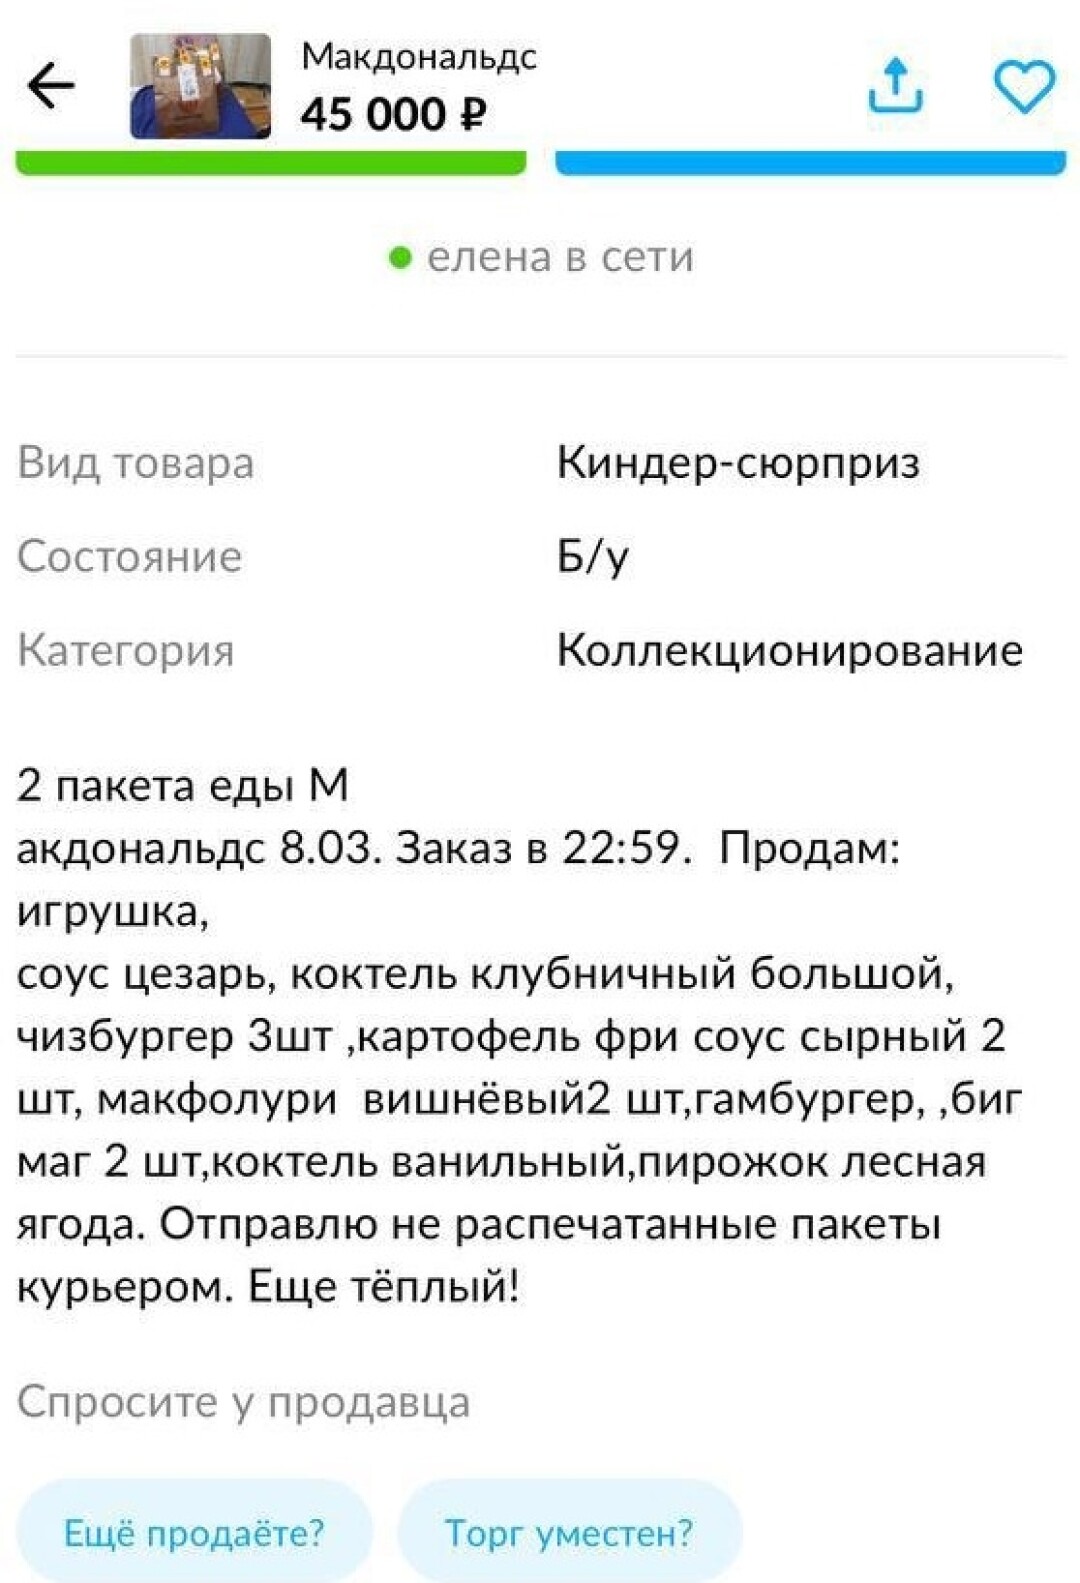 Еду из «Макдональдс» перепродают на «Авито». Цены доходят до 50 тысяч  рублей | Sobaka.ru